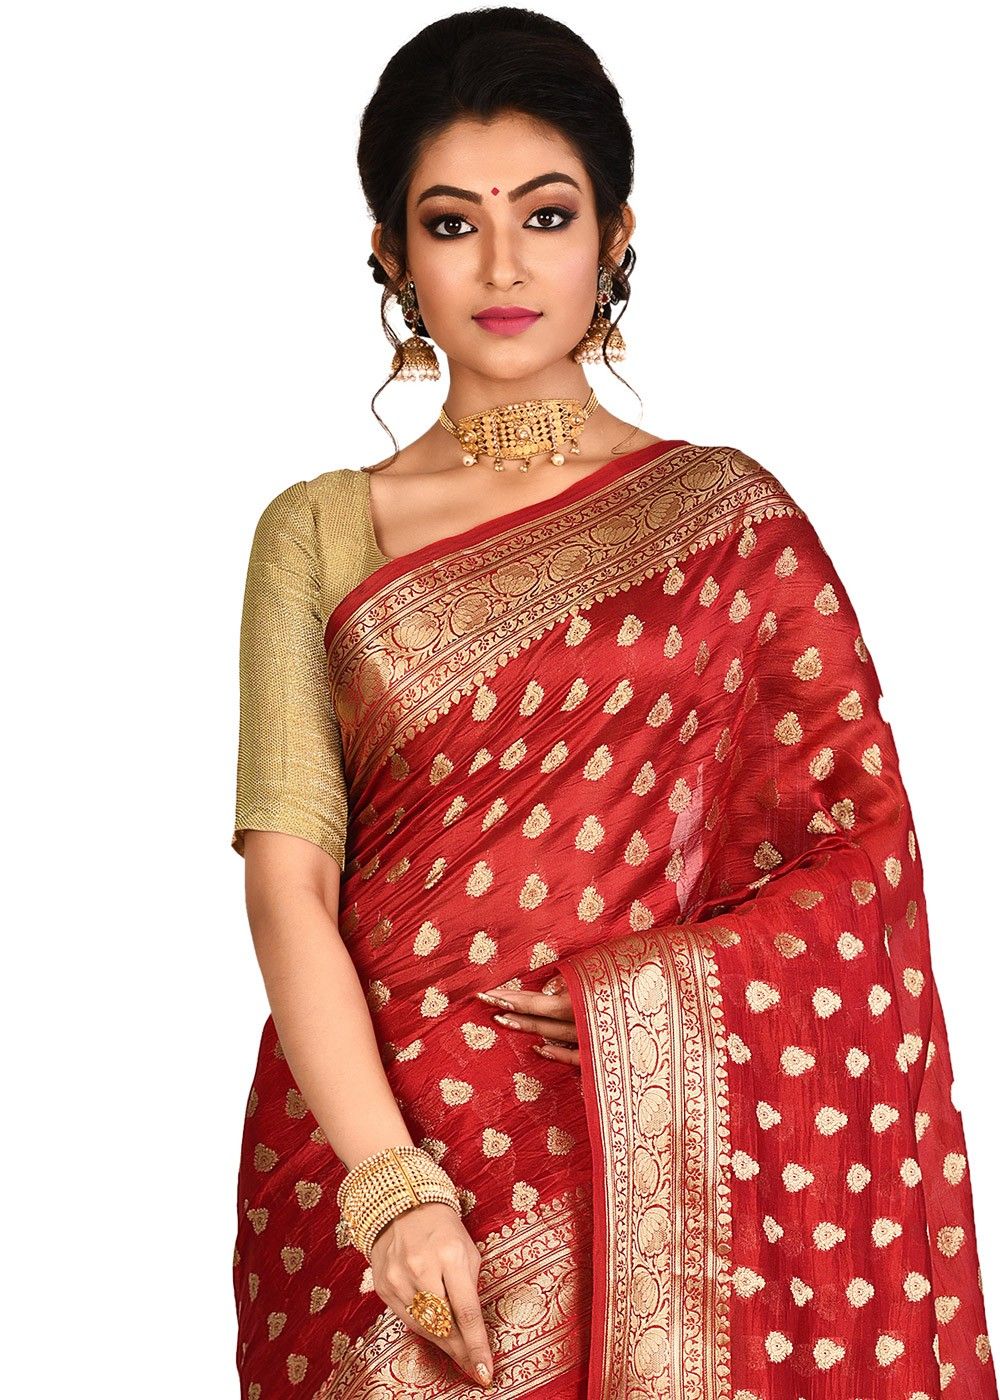 25 Banarasi Saree Designs You Should Try This Season | Saree designs, Saree  look, Saree